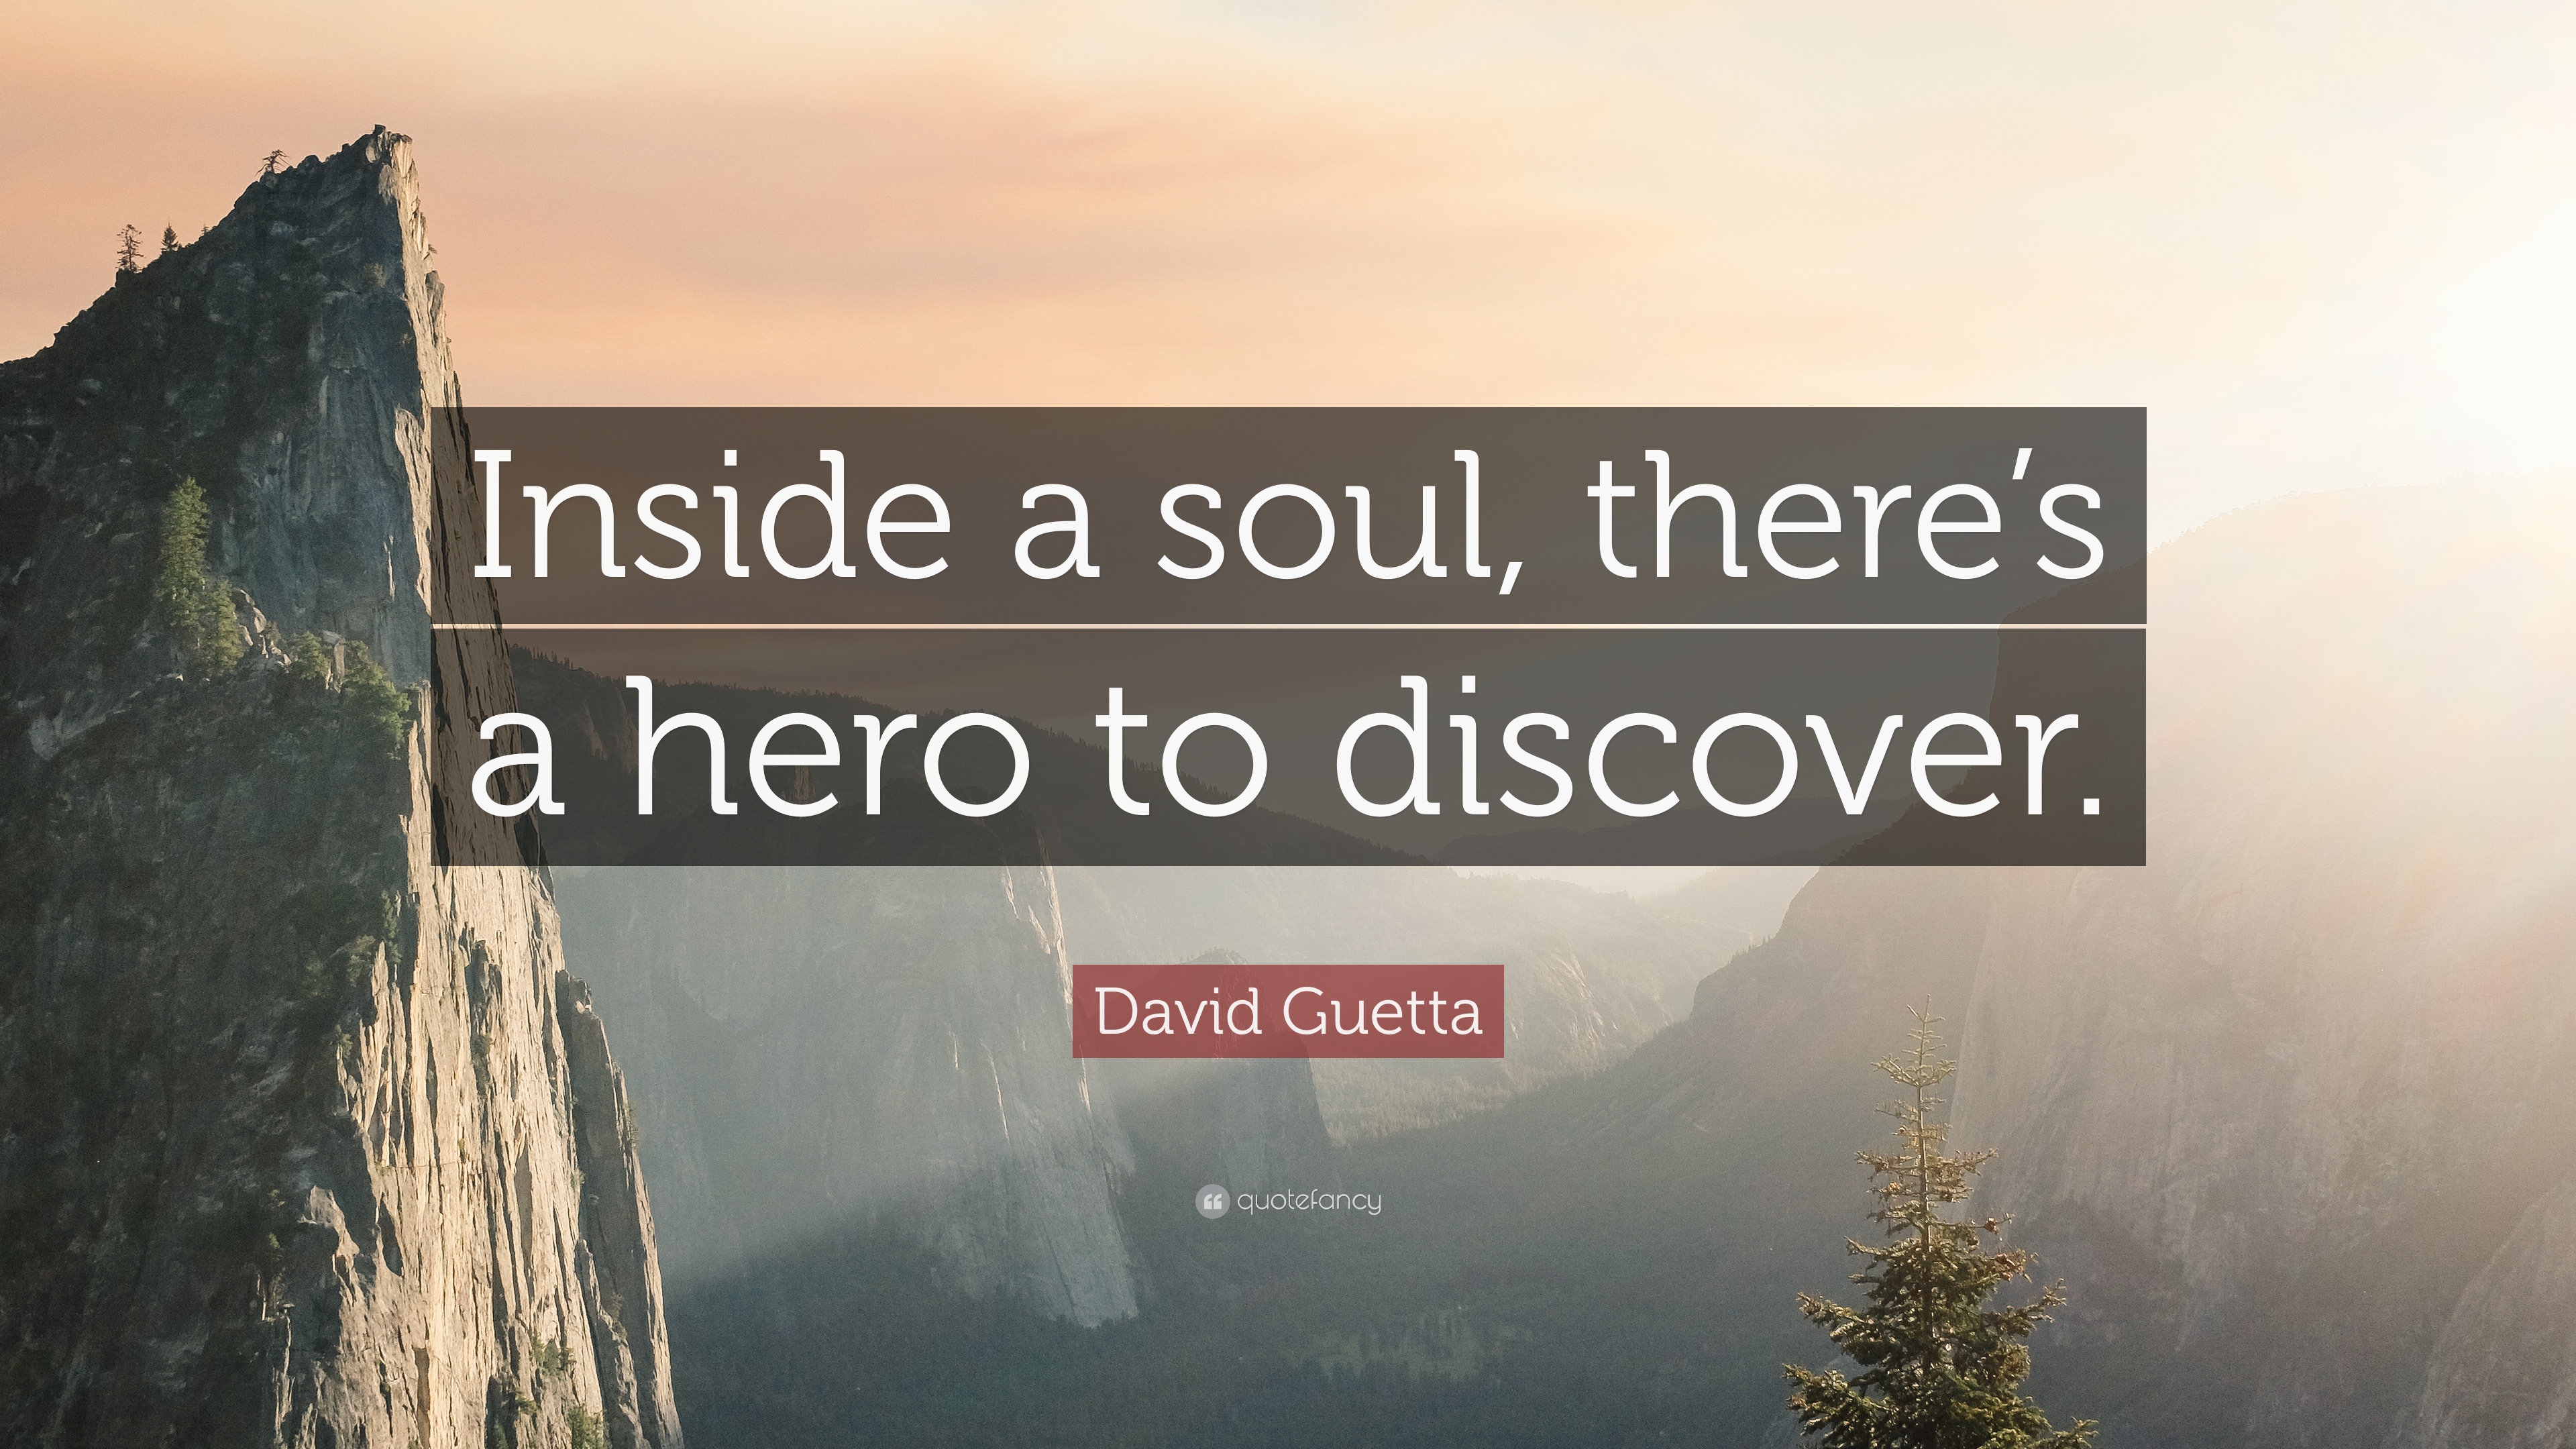 10 Best David Guetta Quotes